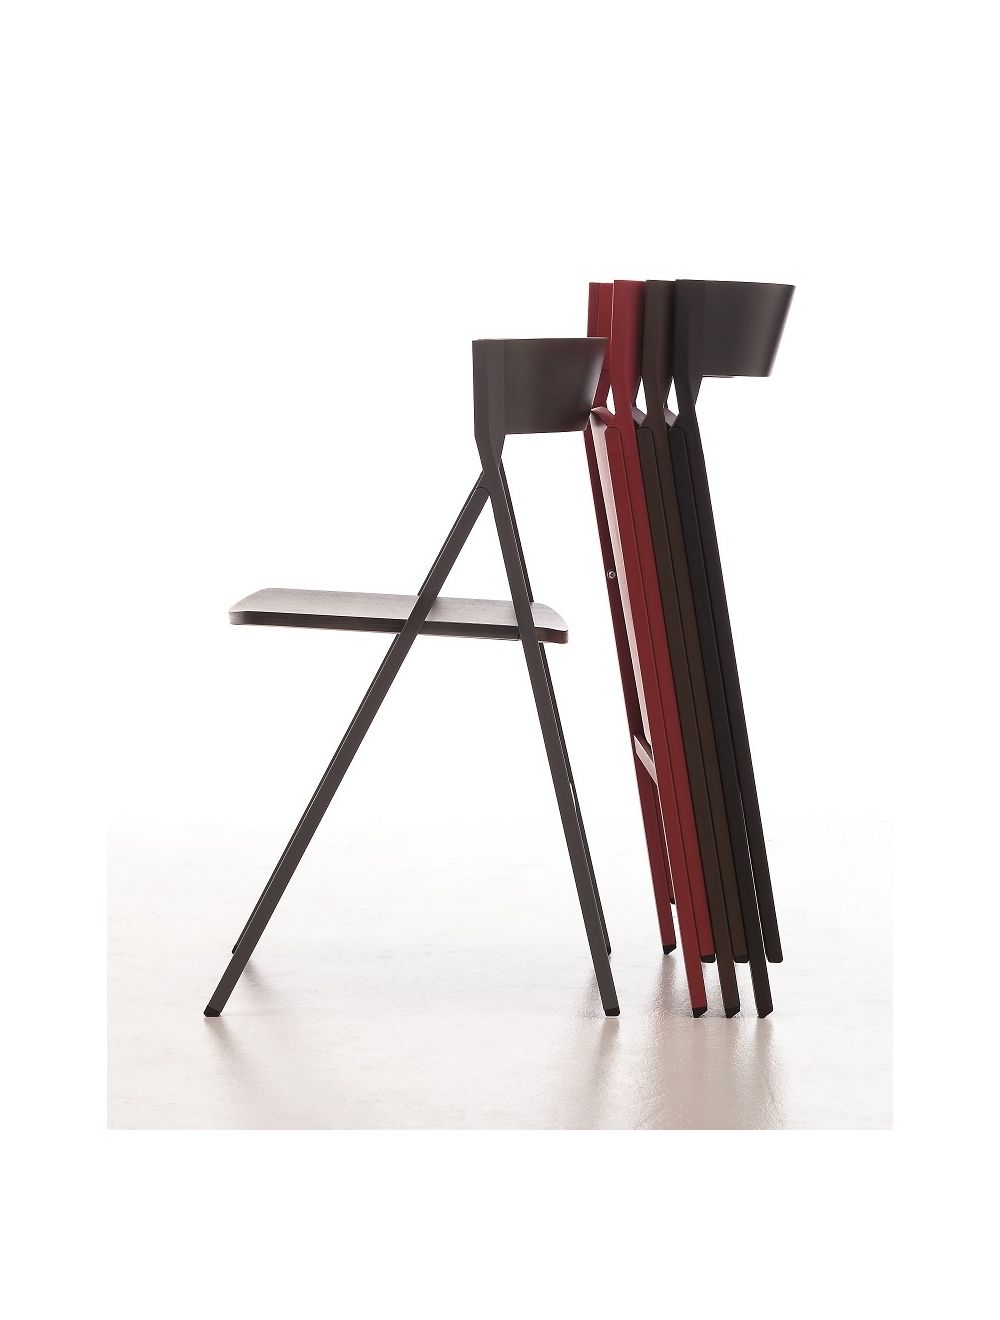 kleermaker textuur woensdag Klapp Folding Chair Arrmet | Sedie.Design®